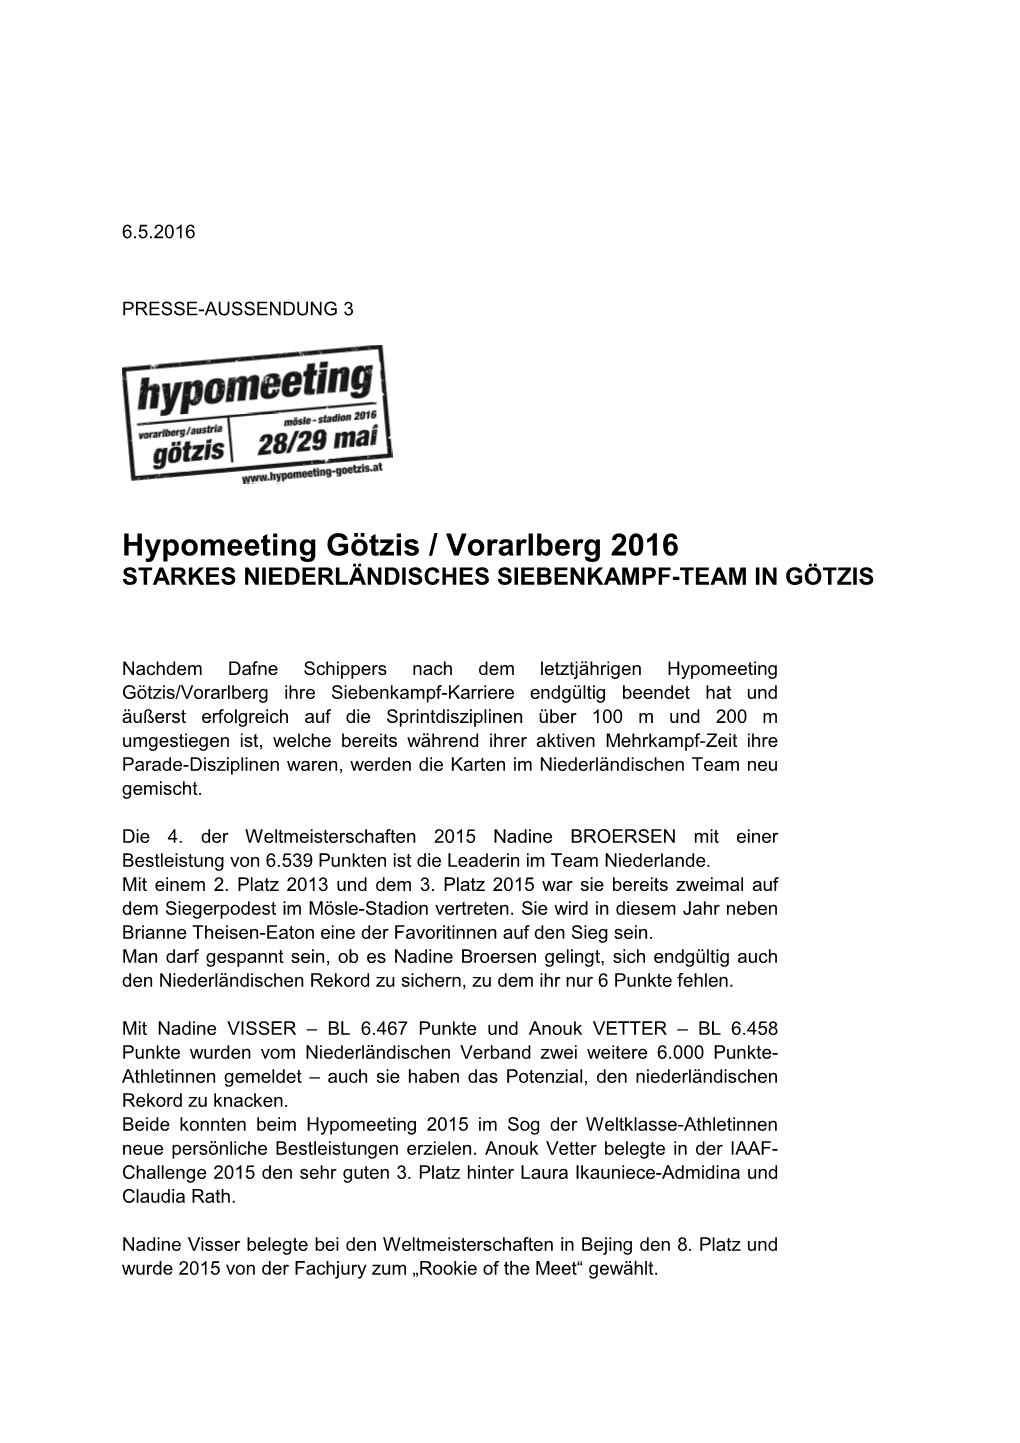 Hypomeeting Götzis / Vorarlberg 2016 STARKES NIEDERLÄNDISCHES SIEBENKAMPF-TEAM in GÖTZIS